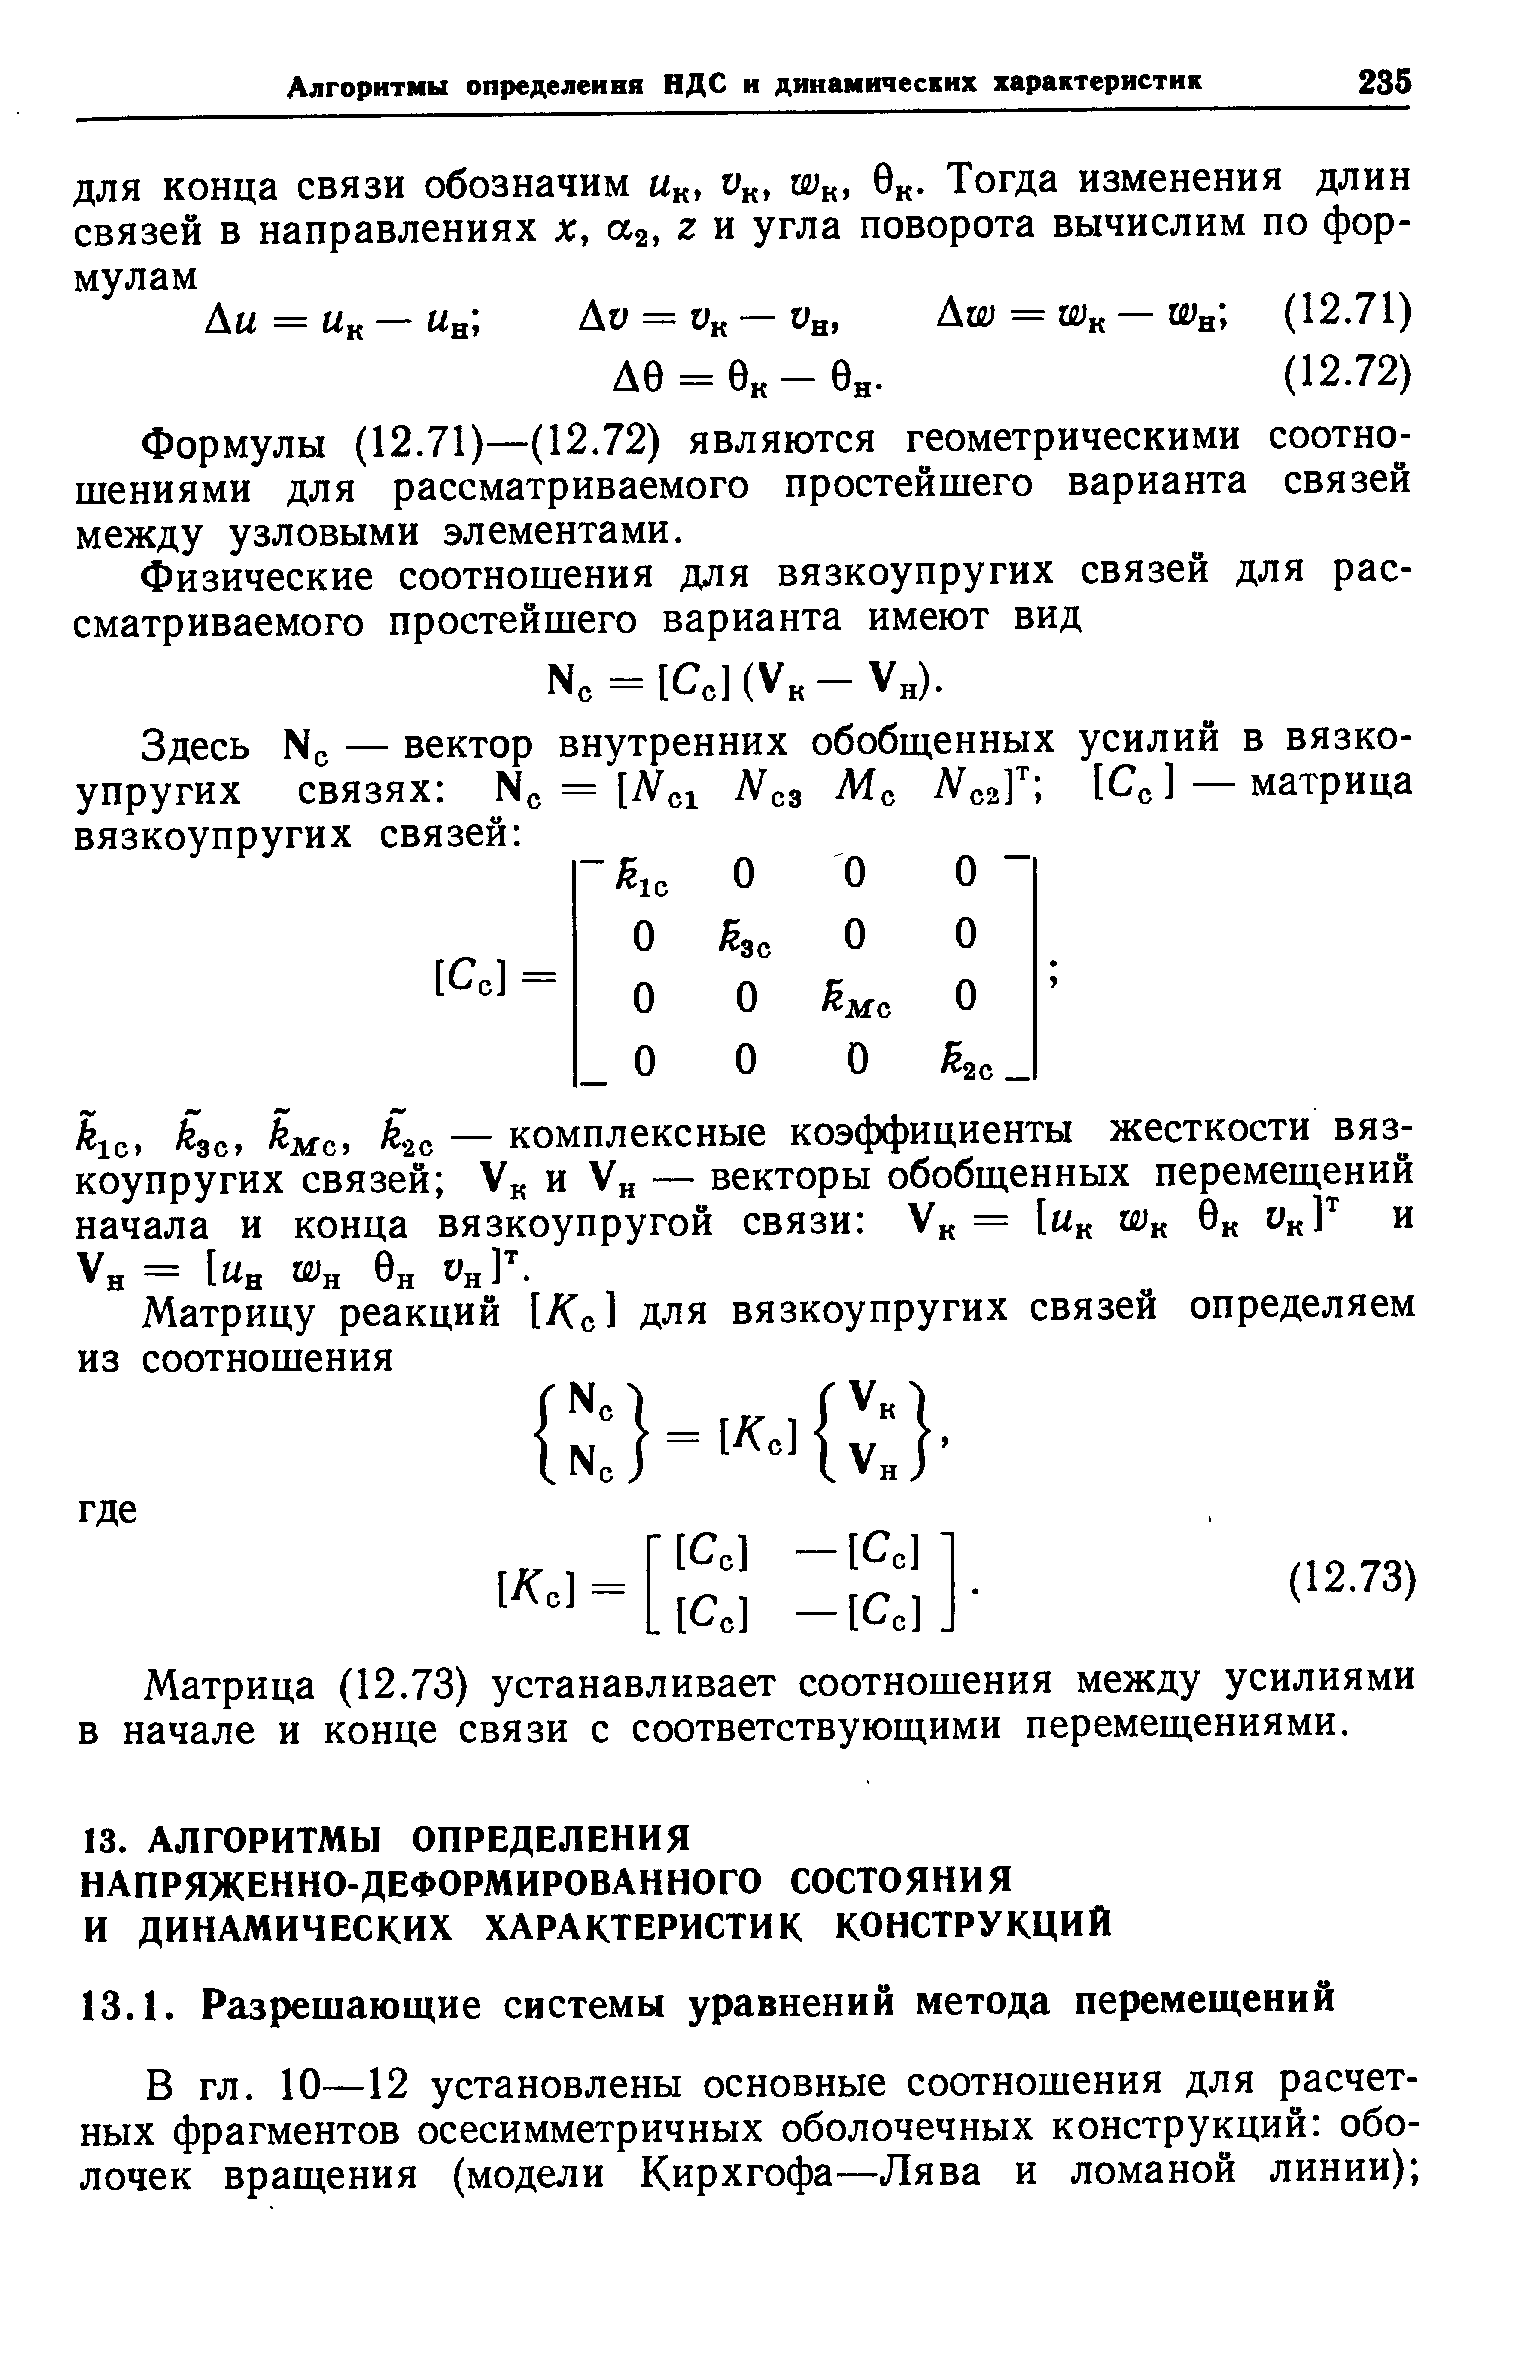 Формулы (12.71)—(12.72) являются геометрическими соотношениями для рассматриваемого простейшего варианта связей между узловыми элементами.
